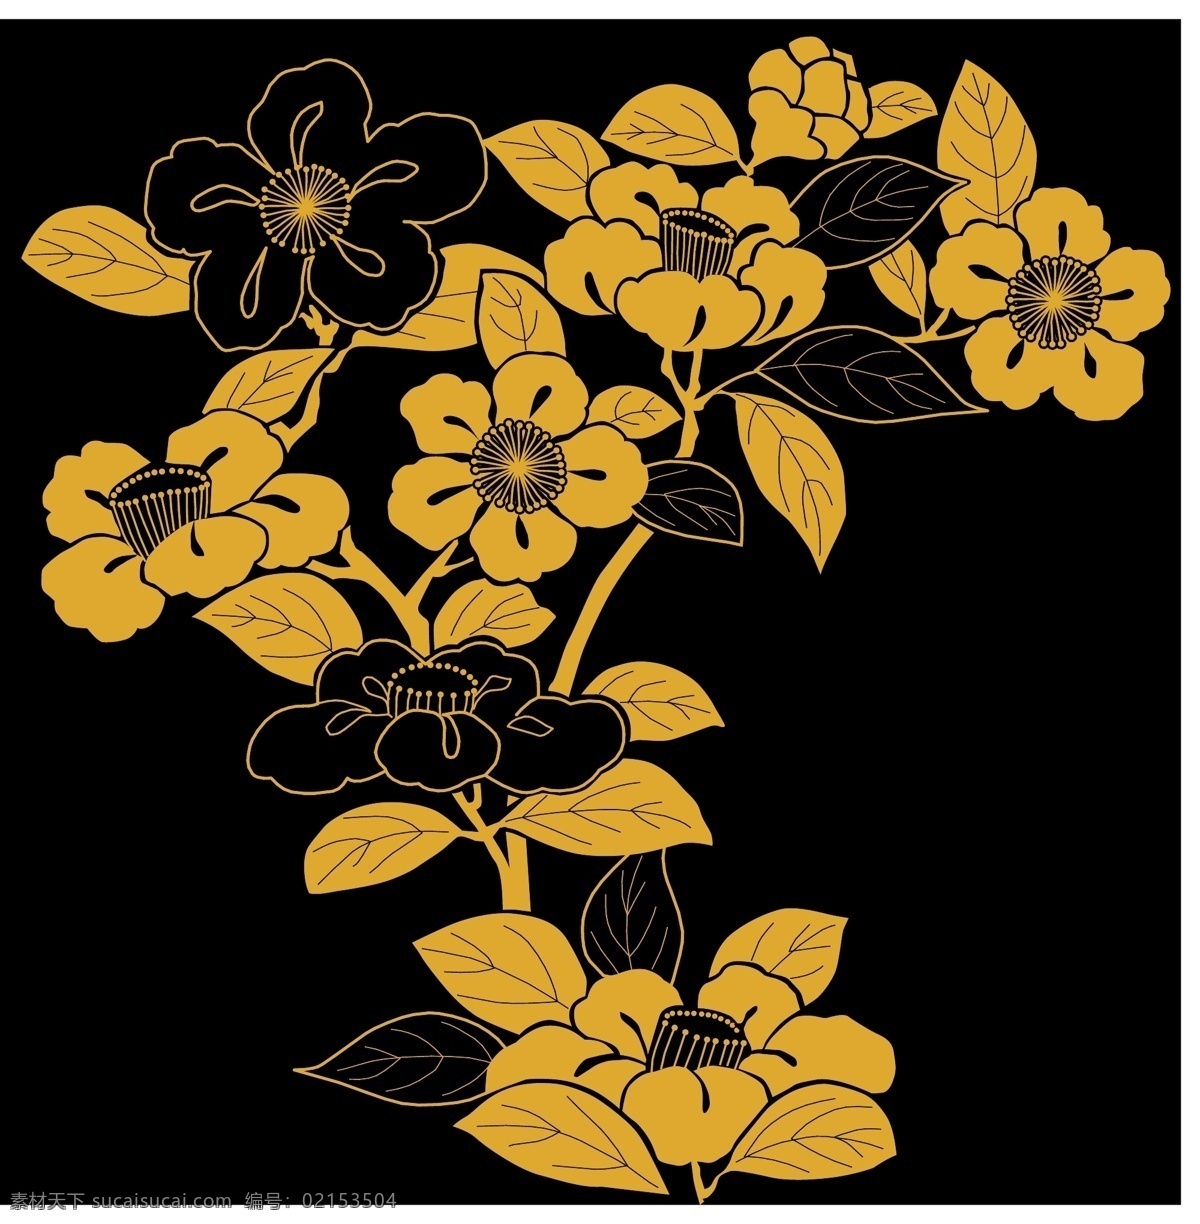 黄色 花枝 装饰 图案 设计素材 花朵 树叶 矢量素材 设计元素 黑色背景图 装饰素材 装饰图案